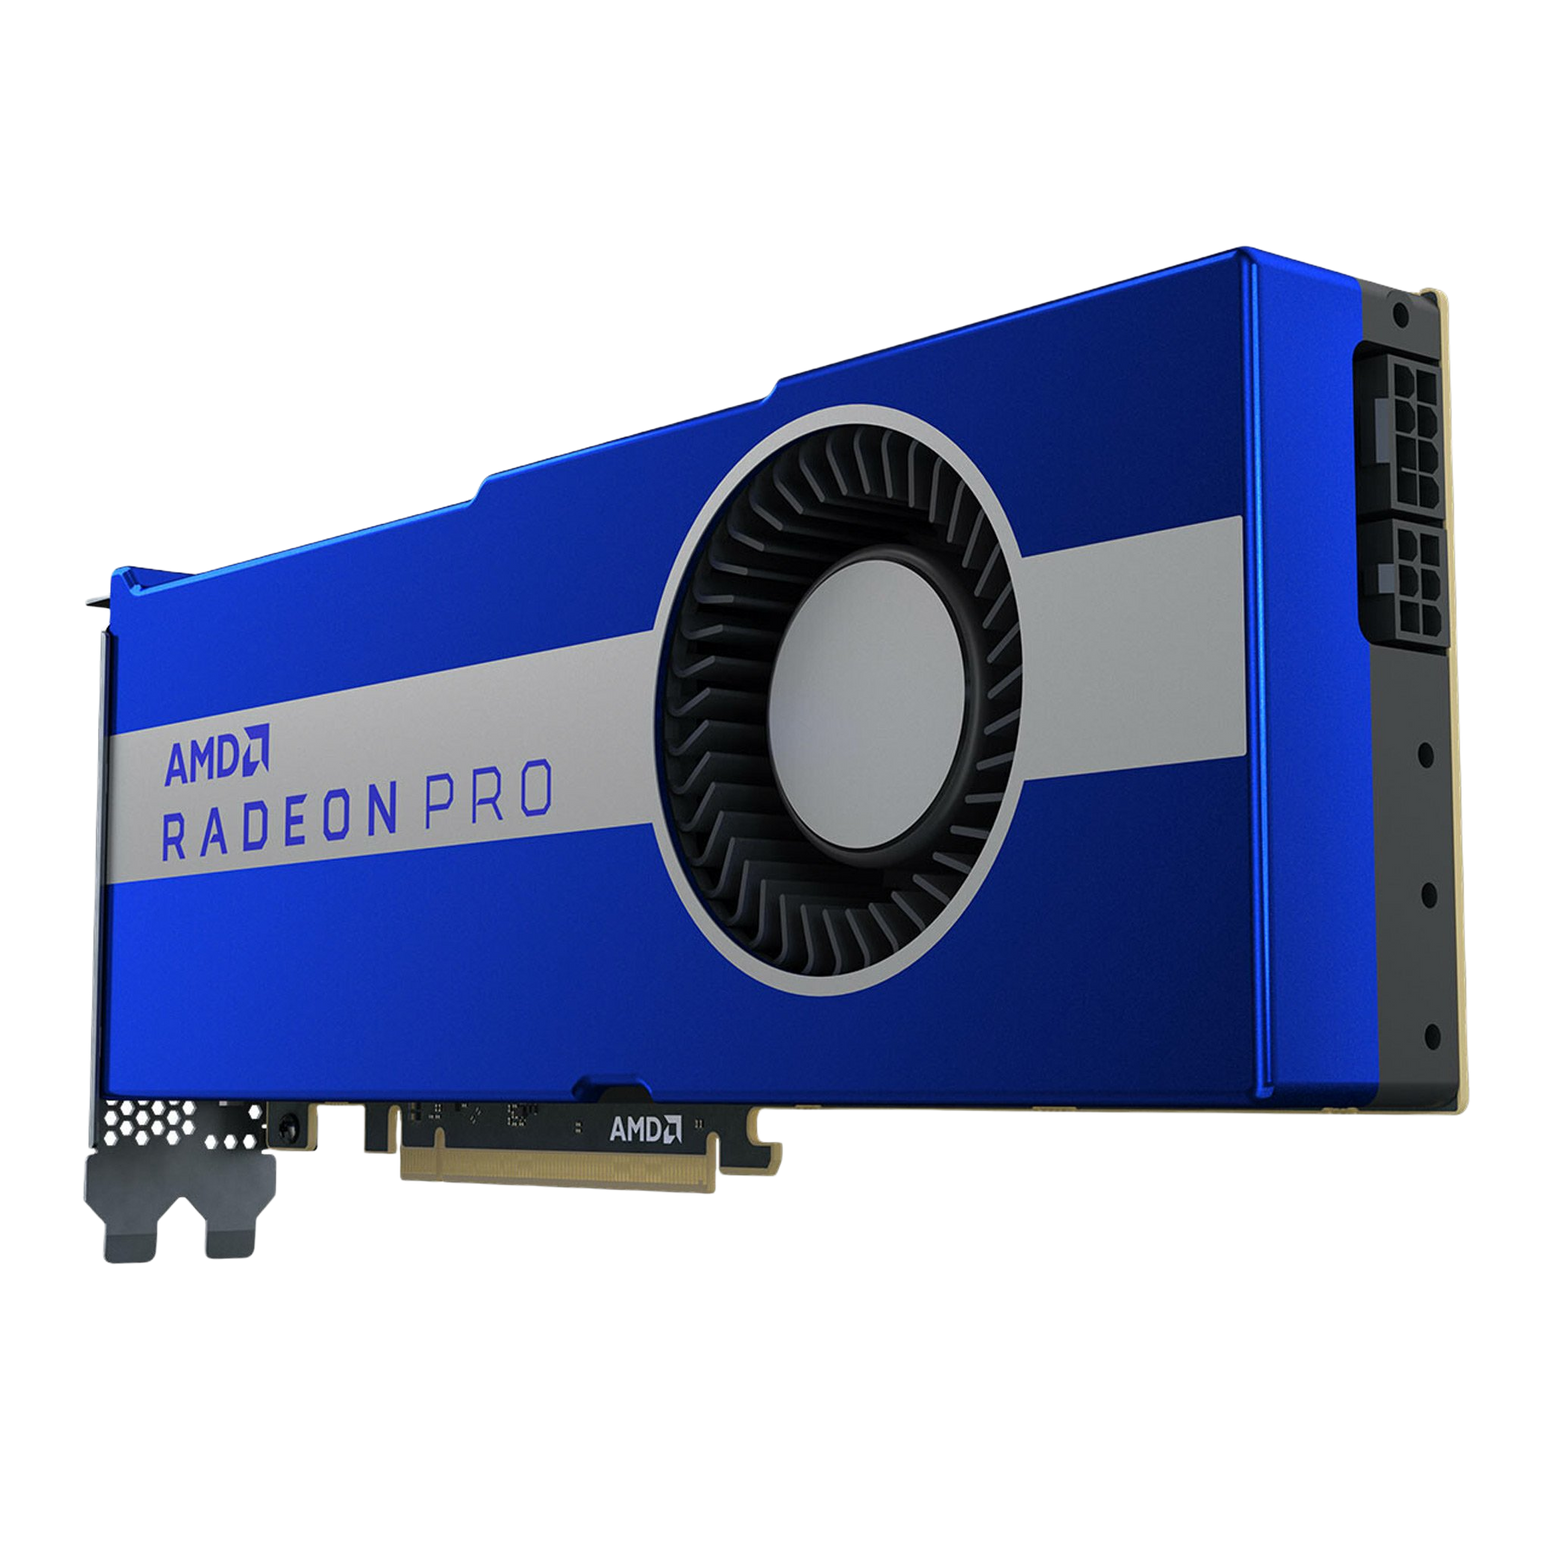 AKiTiO Node Titan Thunderbolt 3 eGPU Enclosure + Radeon Pro W5700 Graphics Card Bundle - Discontinued